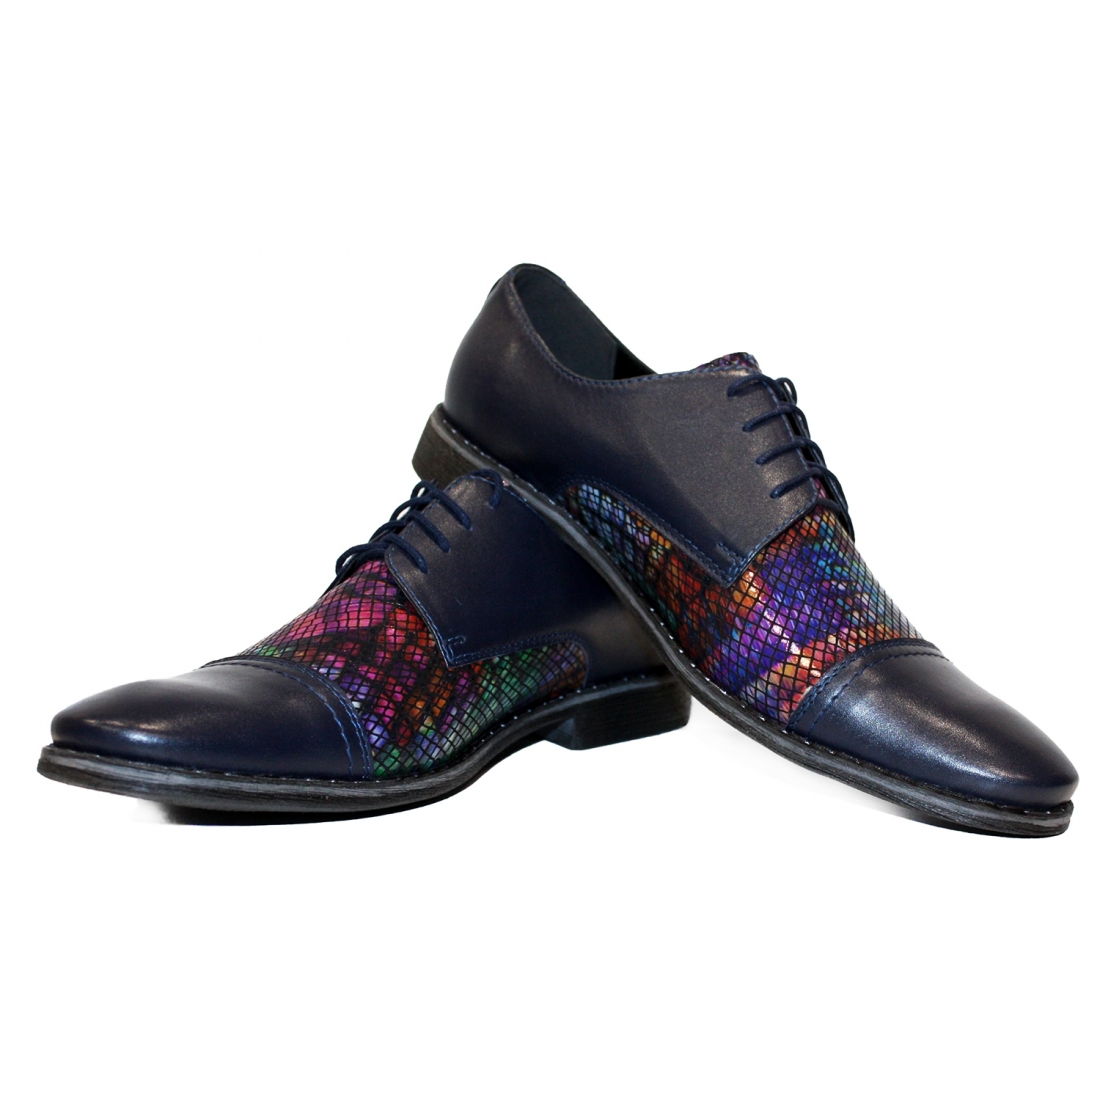 Modello Cubello - Chaussure Classique - Handmade Colorful Italian Leather Shoes